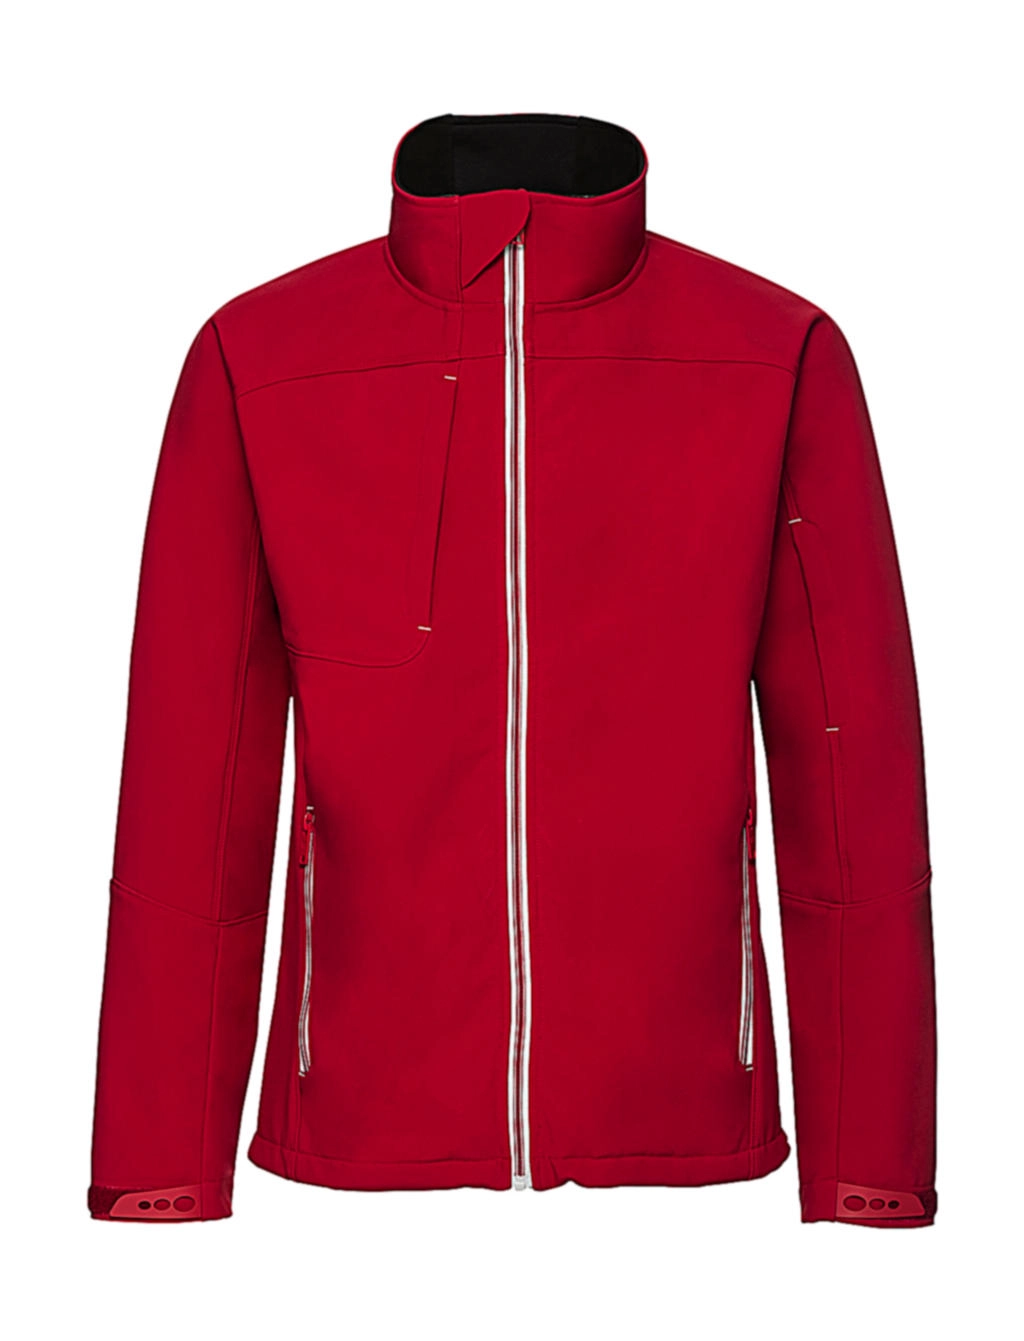 Men`s Bionic Softshell Jacket zum Besticken und Bedrucken in der Farbe Classic Red mit Ihren Logo, Schriftzug oder Motiv.